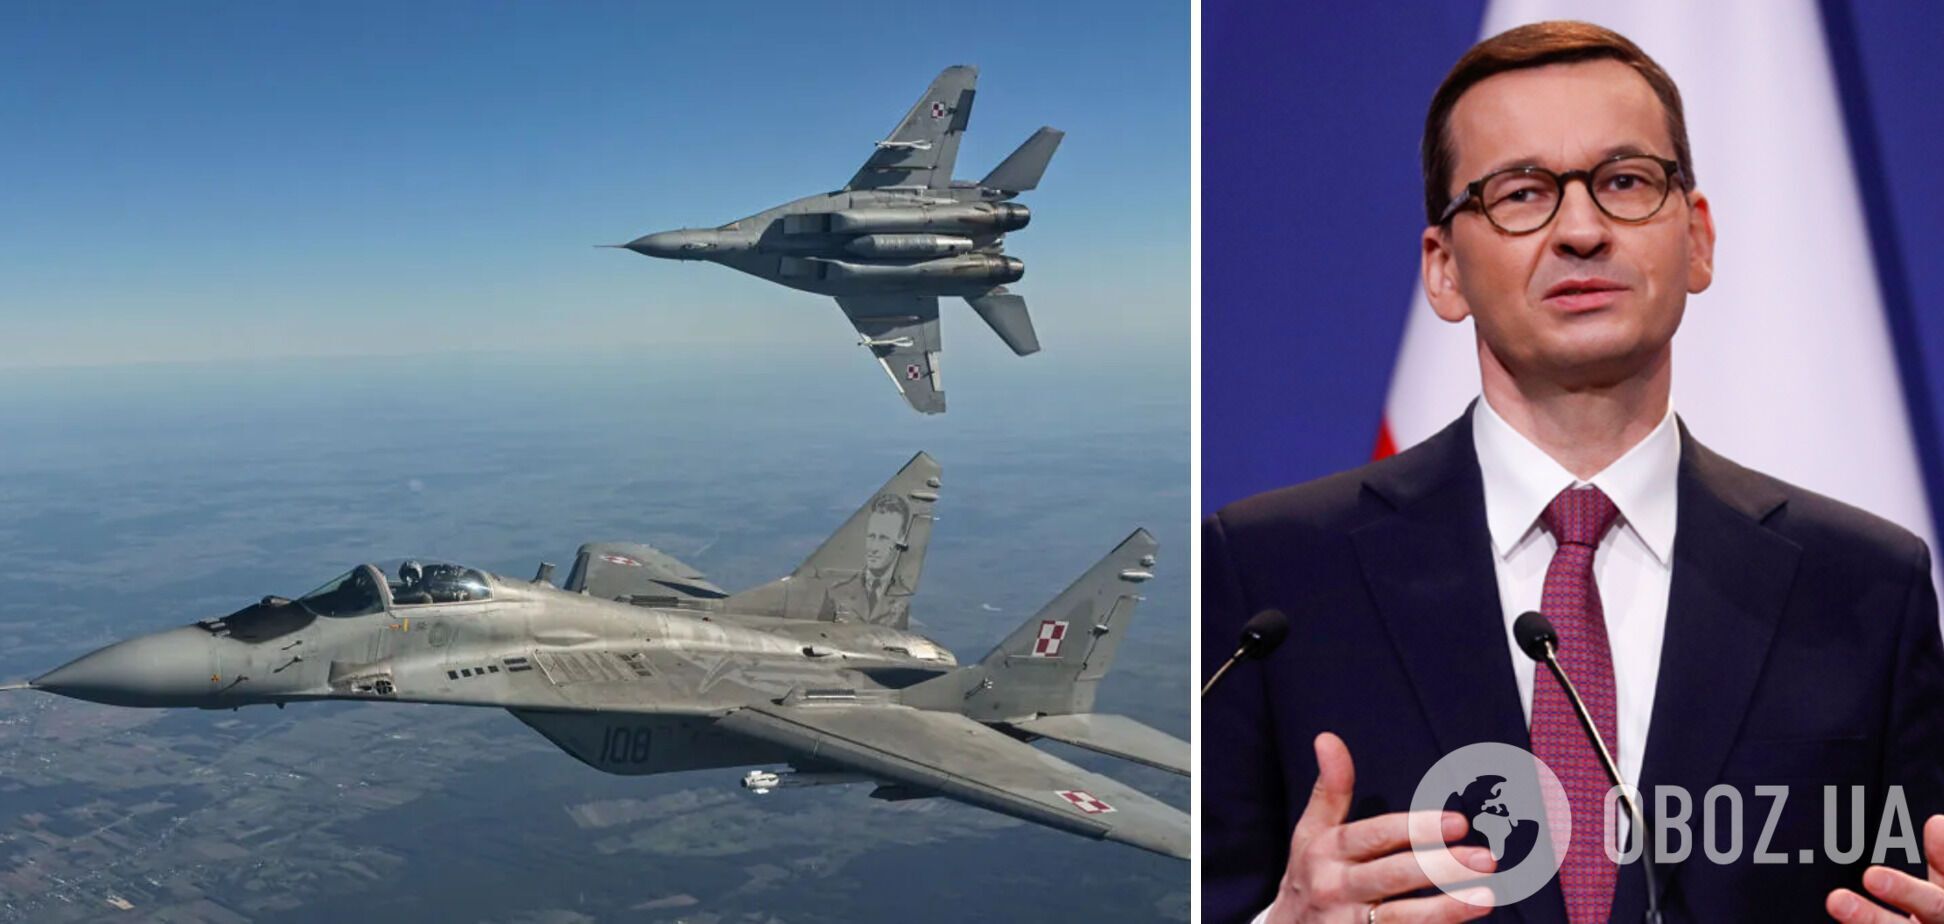 Моравецький обіцяє передати Україні винищувачі МіГ-29 протягом 4-6 тижнів